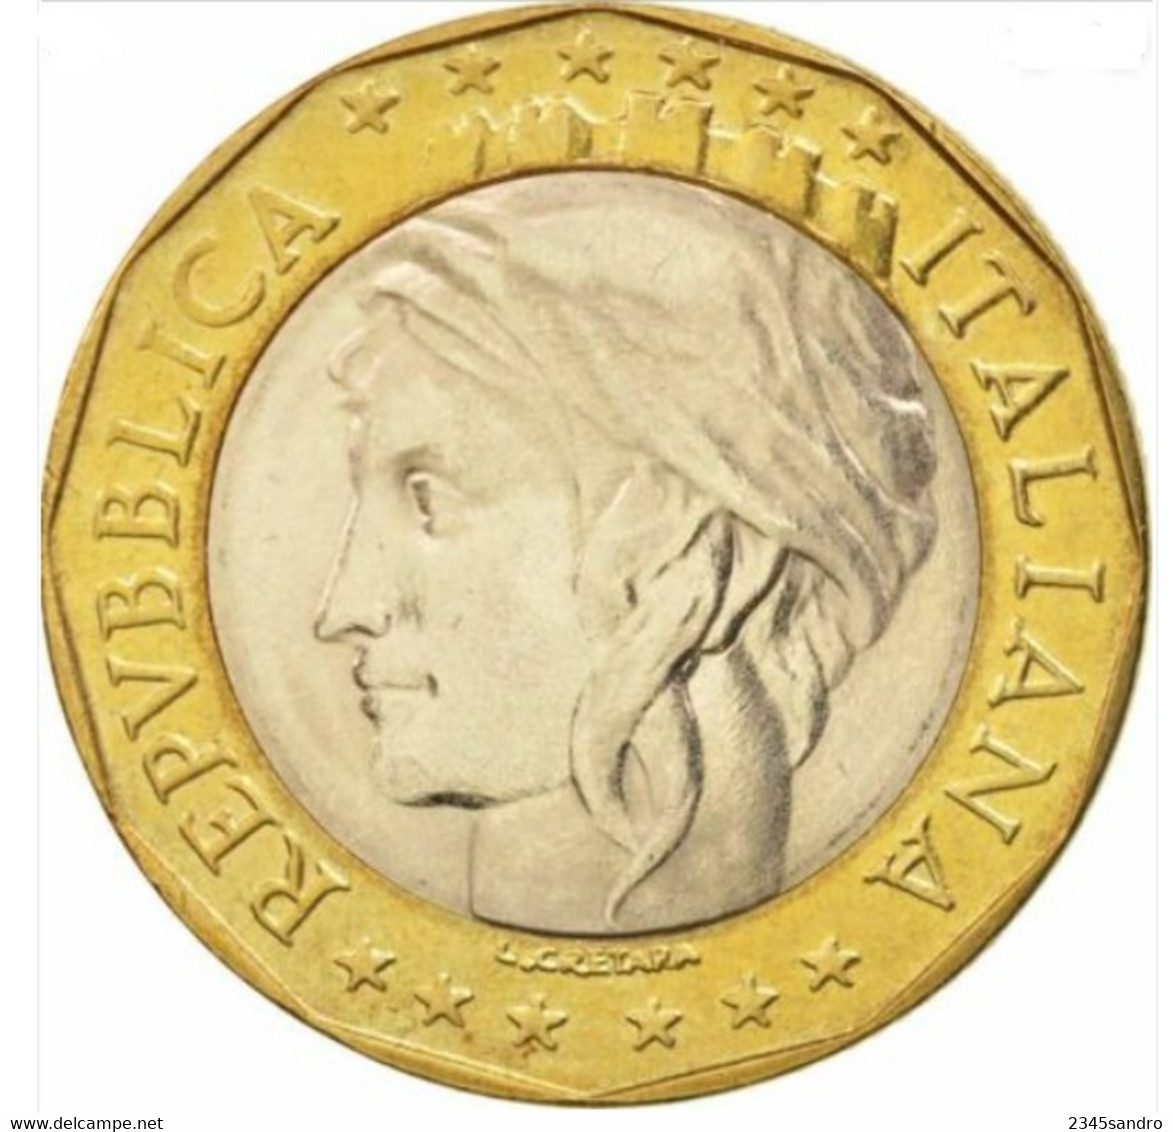 1000 Lire Confini Giusti 1997 FDC, Uncirculated, Stempelglanz, Fleur De Coin REPUBBLICA ITALIANA - 1 000 Liras